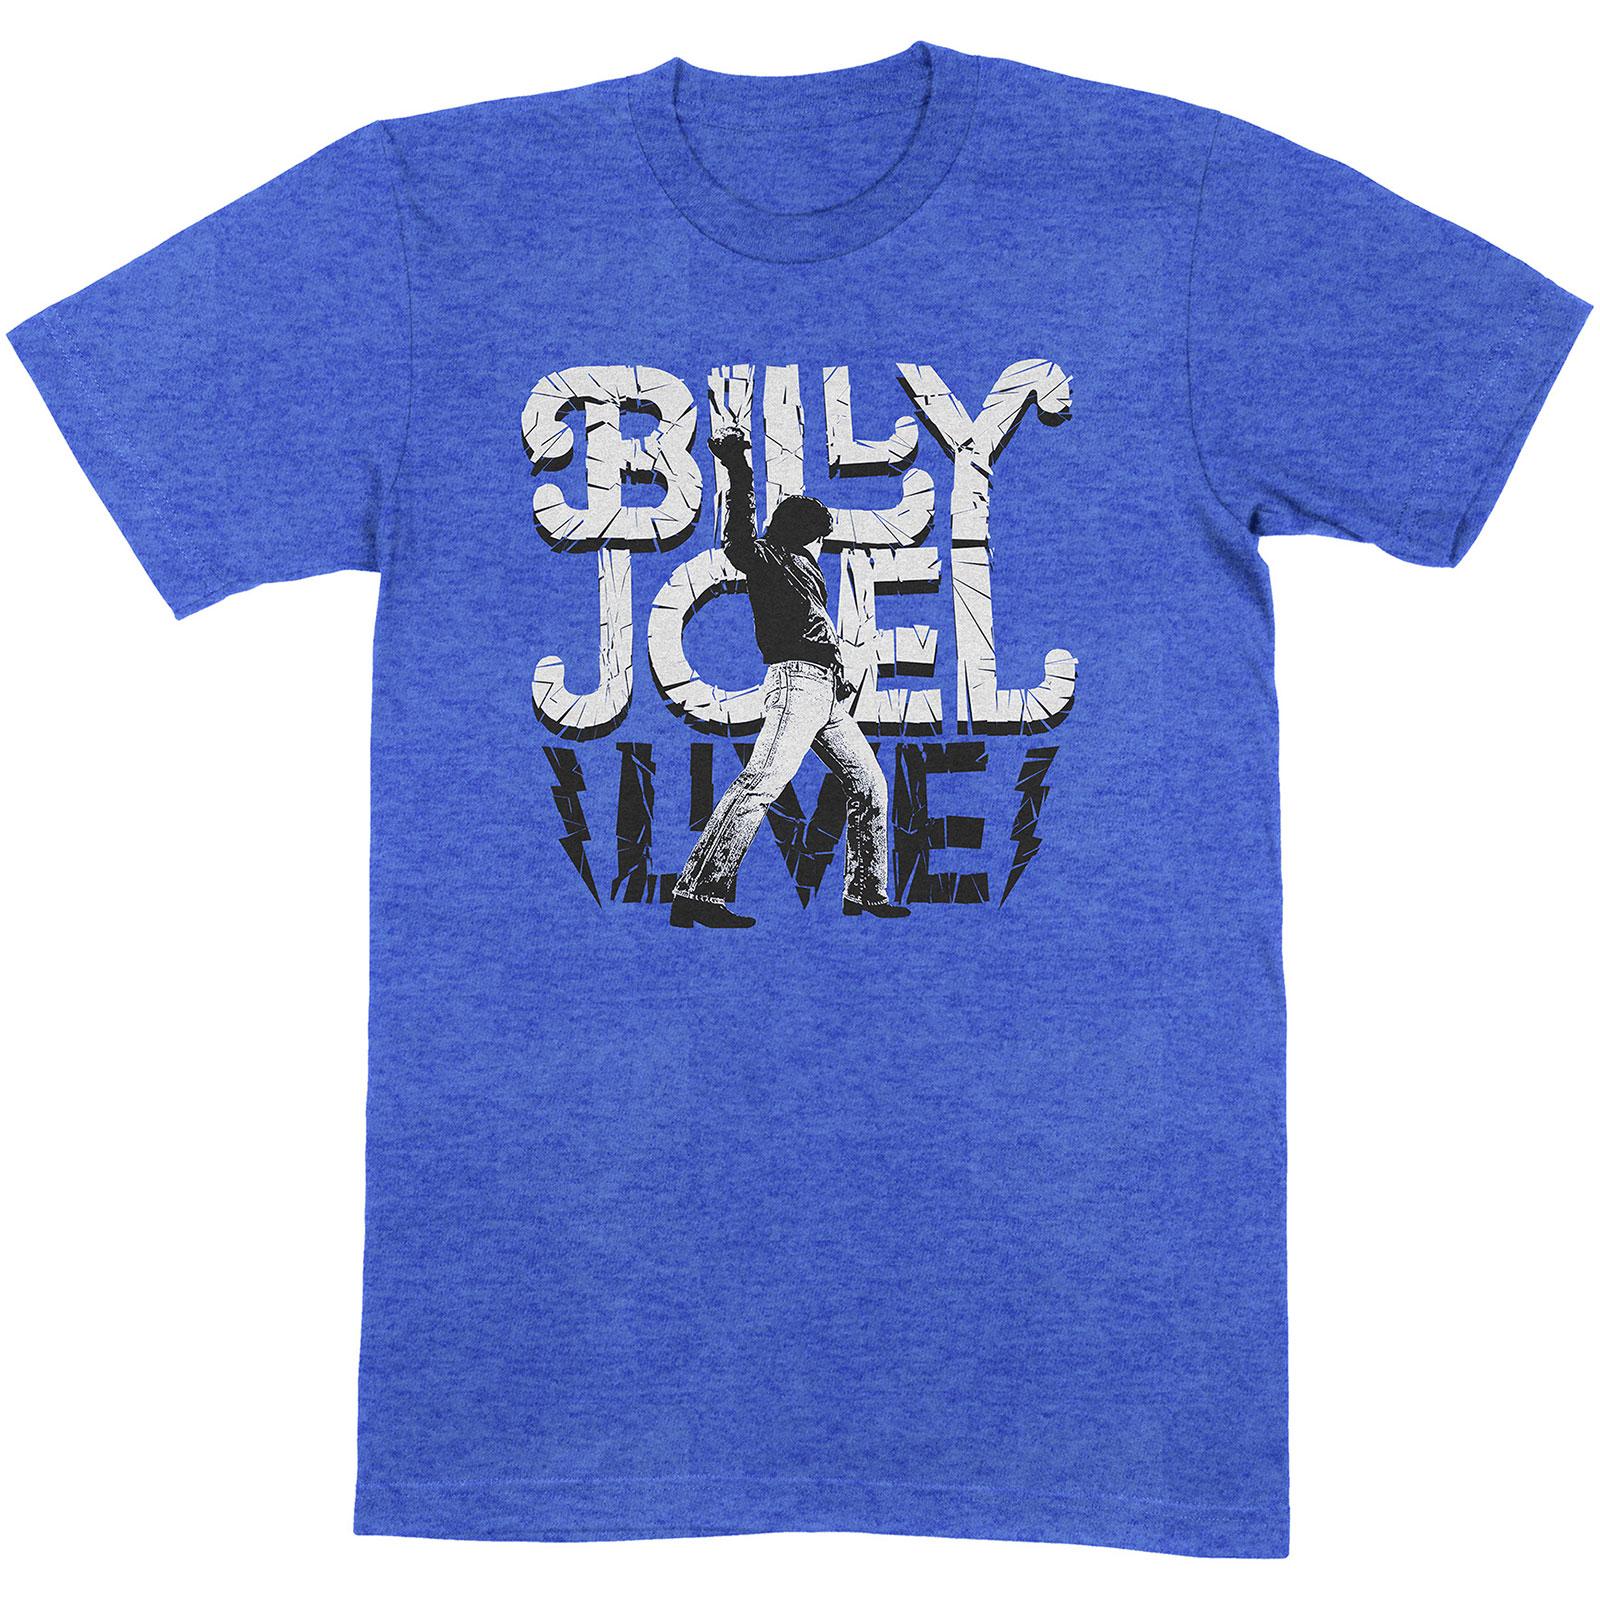 (ビリー・ジョエル) Billy Joel オフィシャル商品 ユニセックス Glass Houses Live Tシャツ コットン 半袖 トップス 【海外通販】